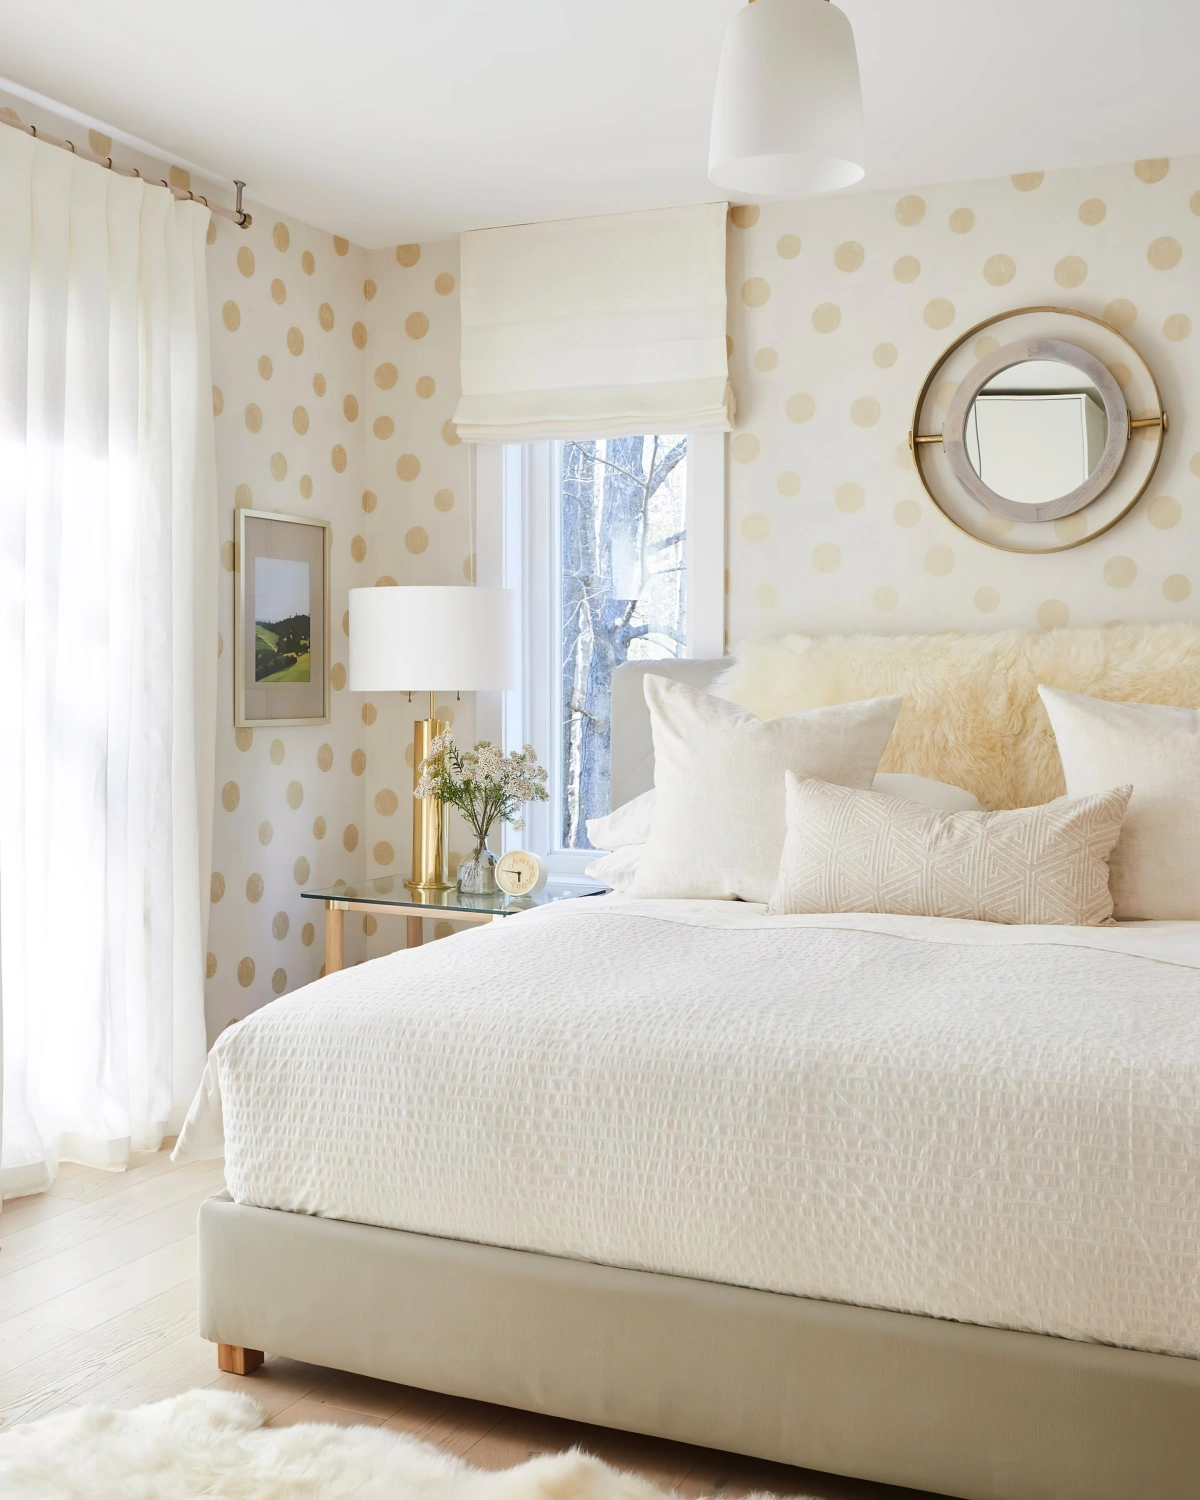 rideaux blancs chambre cocooning papier peint beige dots dores miroir rond